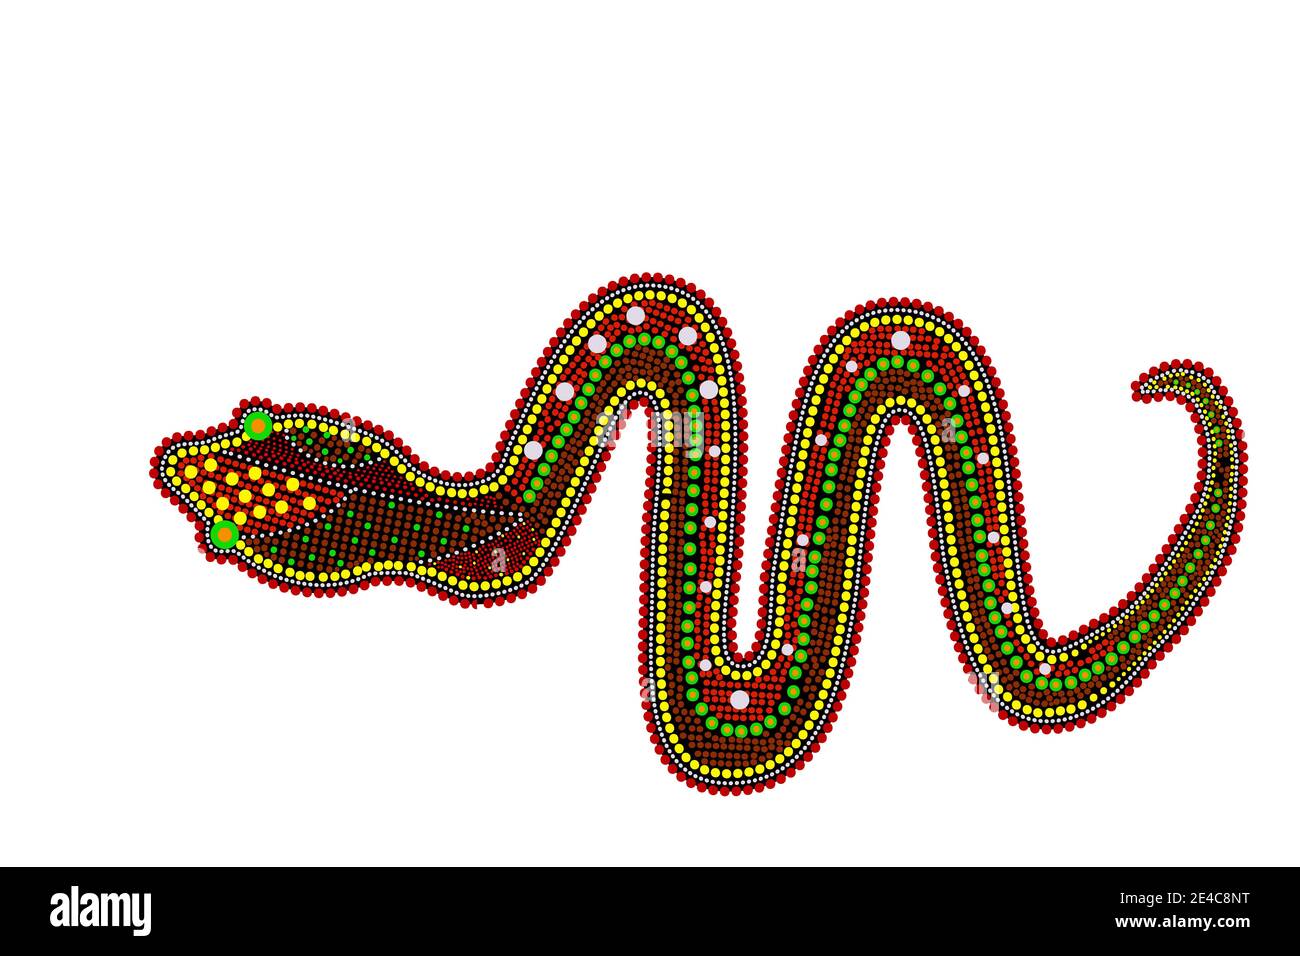 Serpent isolé sur fond blanc. Australie peinture de point de serpent aborigène.python de style aborigène.style ethnique décoratif.Illustration vectorielle de stock Illustration de Vecteur